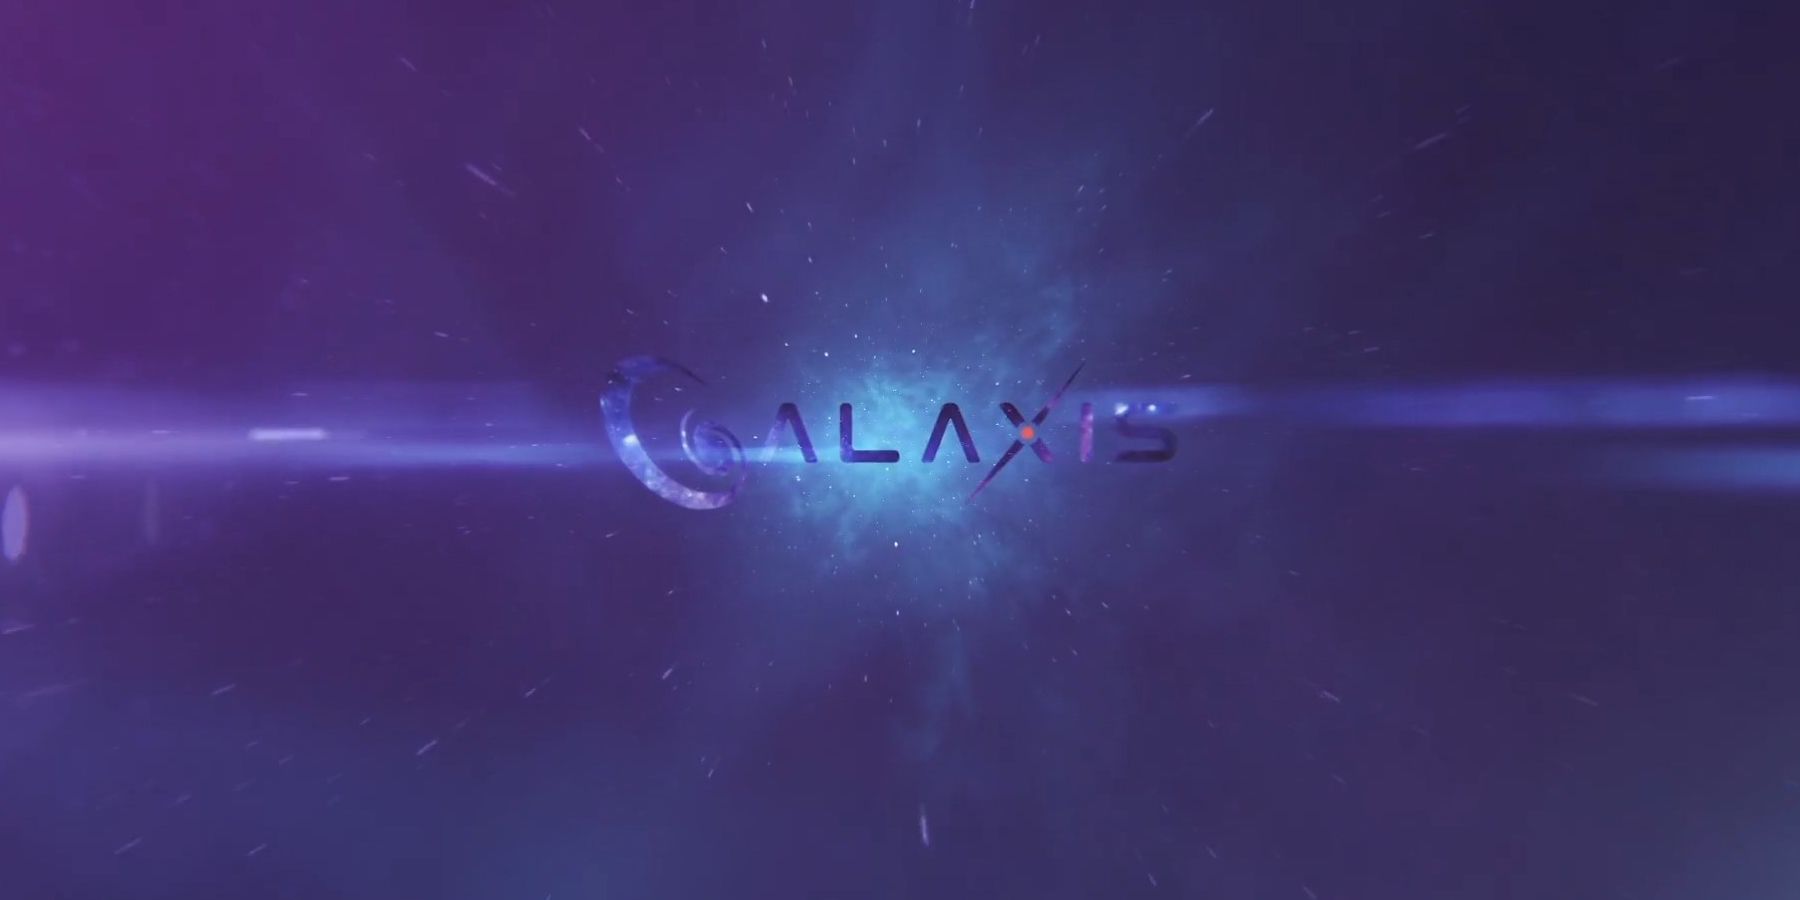 Galaxis -Interview: CEO Max Gallardo Details der Streaming -Plattform, Point Systems, Community Moderation und mehr